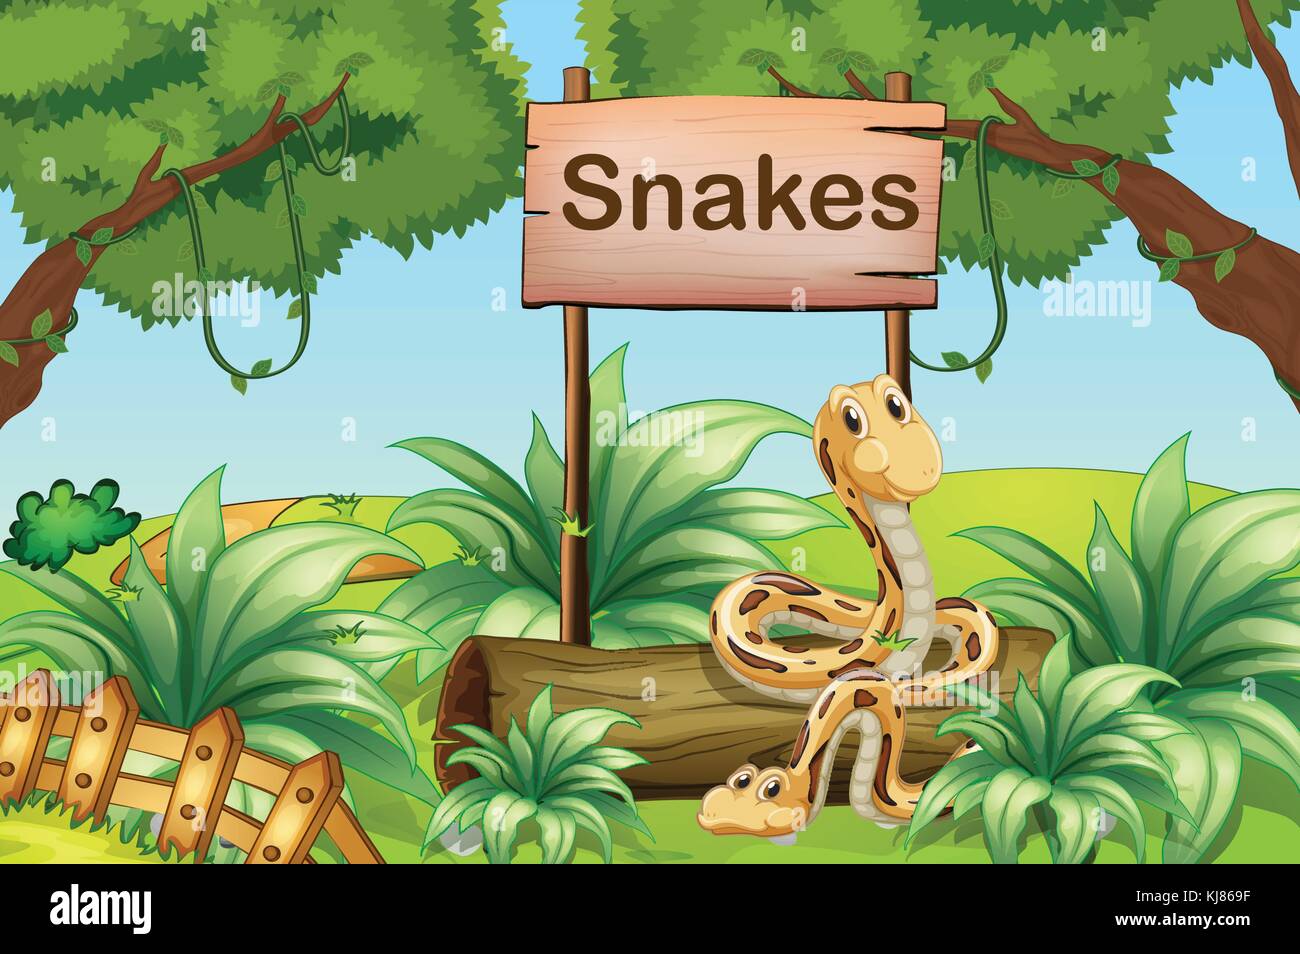 Ilustración de las serpientes en las colinas junto a un cartel de madera Ilustración del Vector